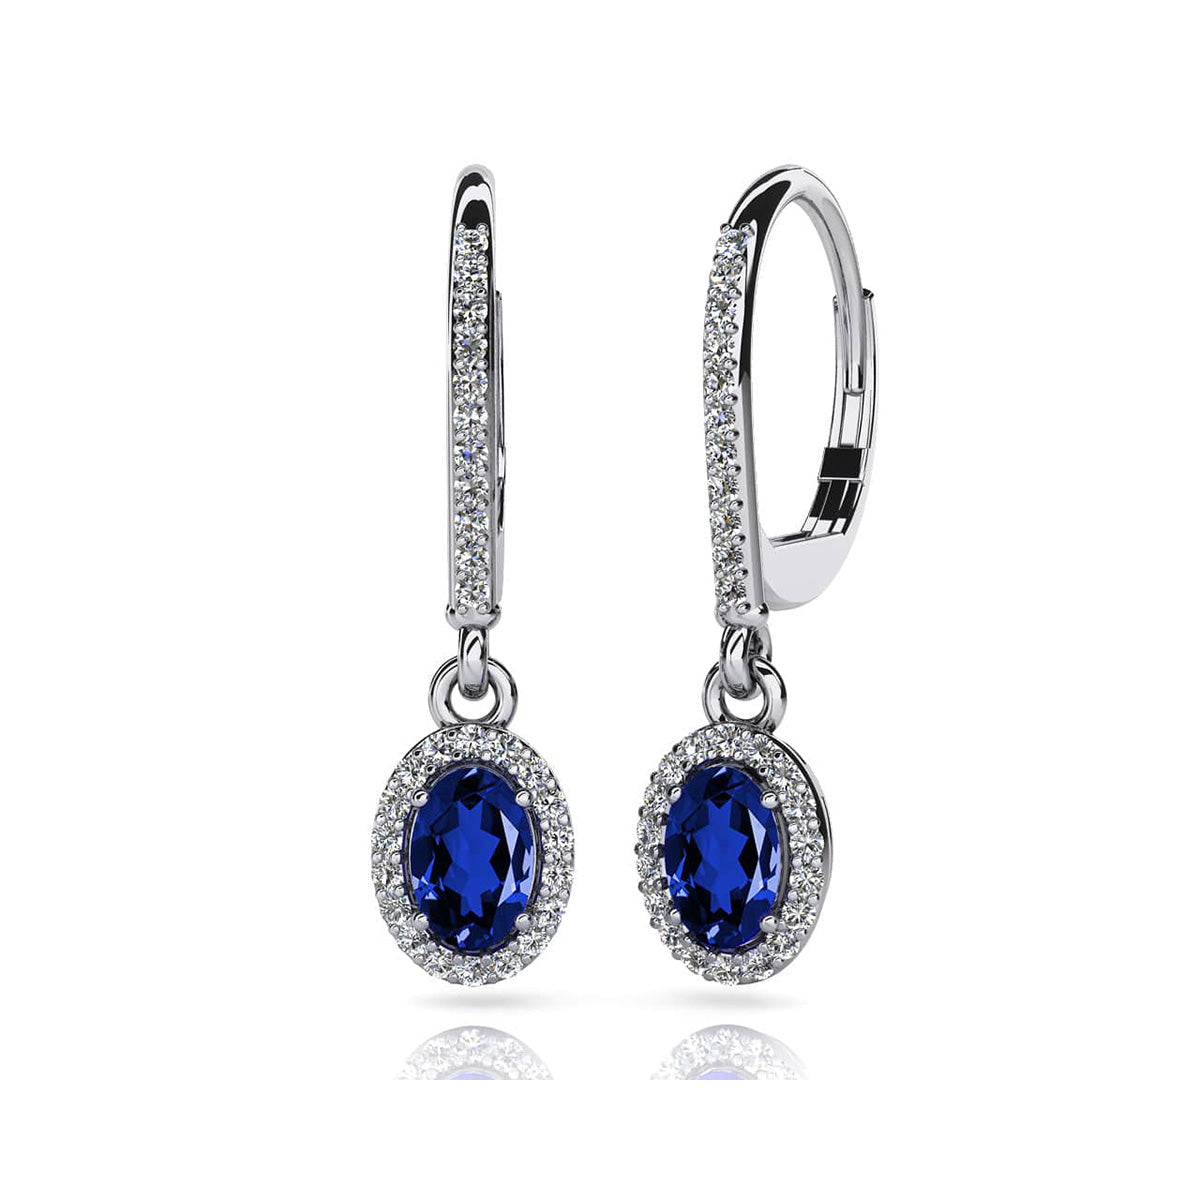 Oval Shaped Gemstone And Diamond Earrings